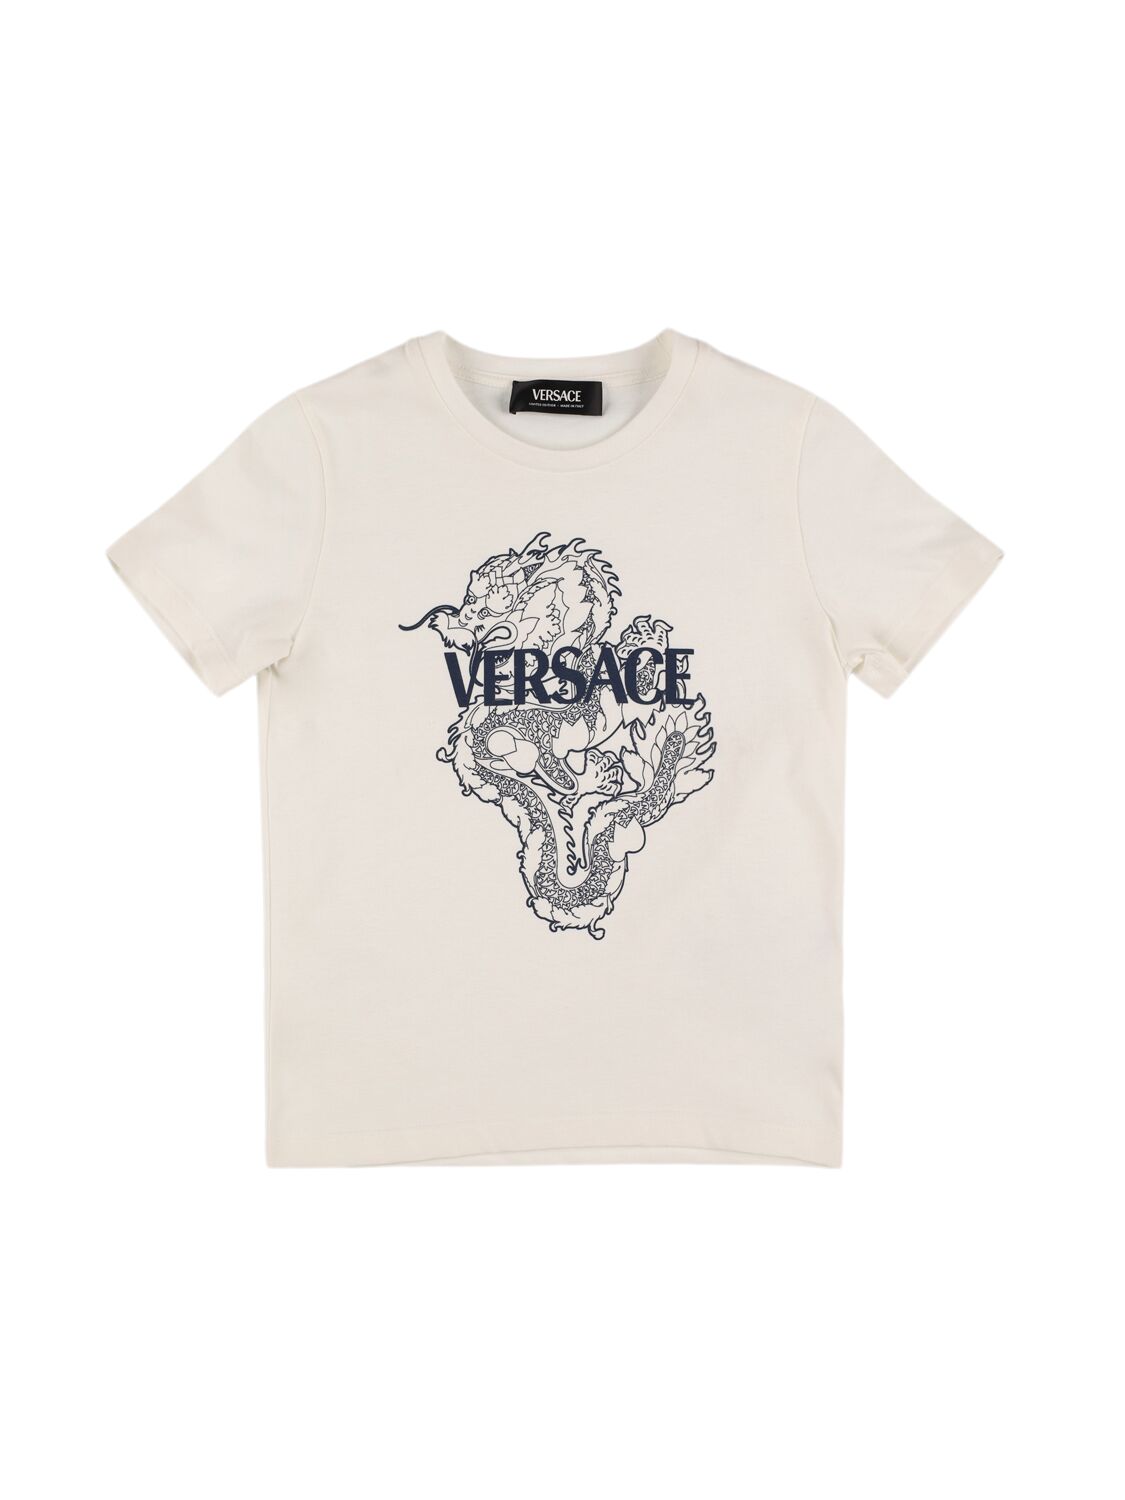 Dragan Printed Cotton Jersey T-shirt